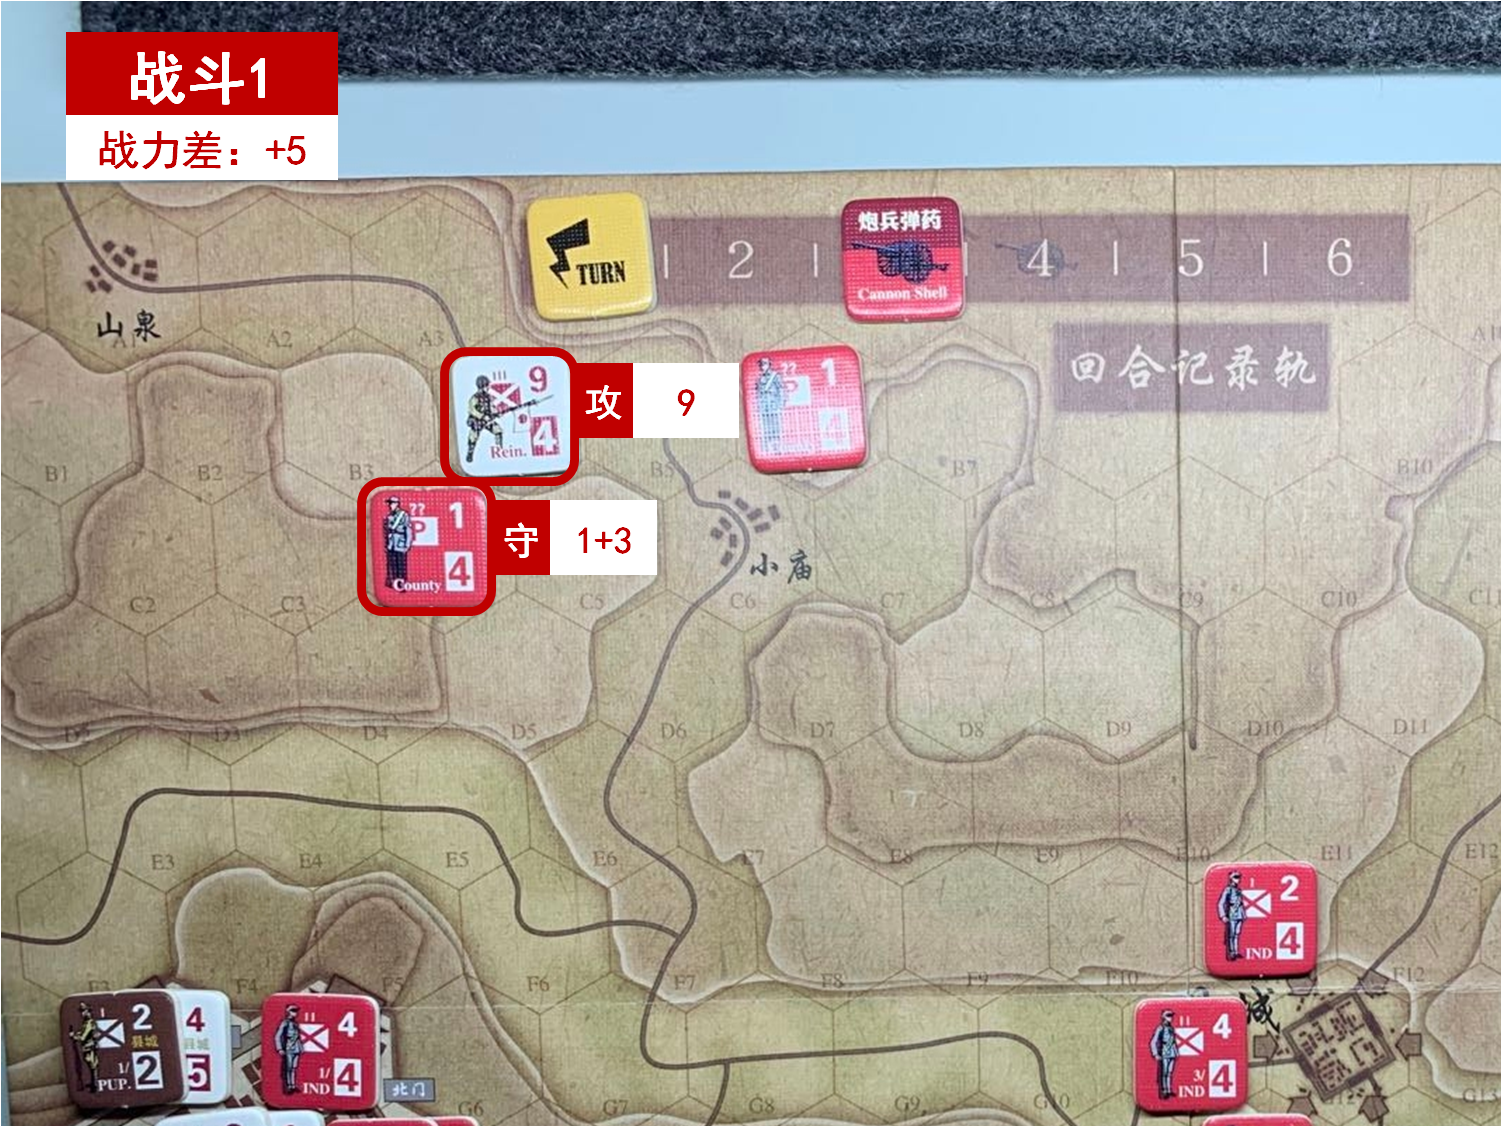 第一回合 日方战斗阶段 战斗1 战斗力差值